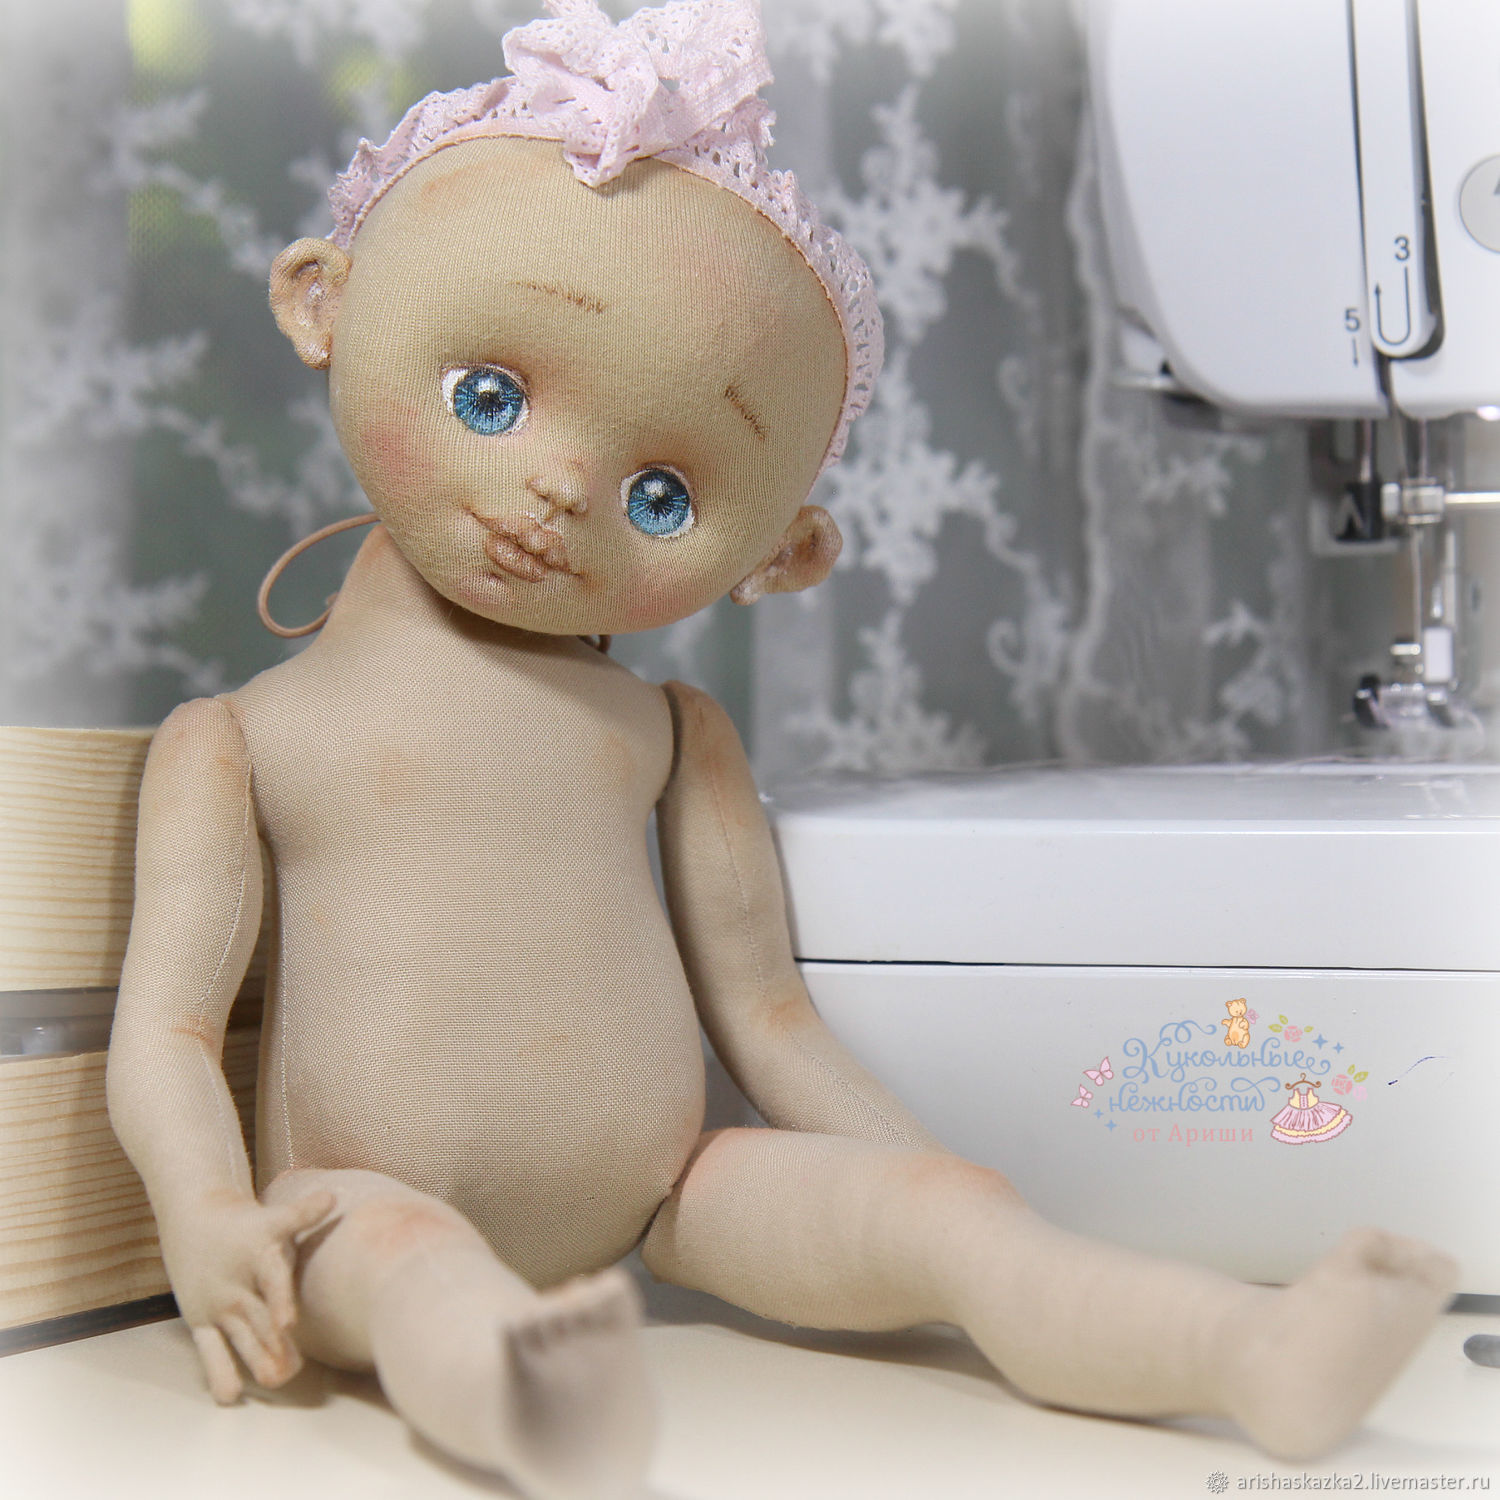 картинка Выкройка 2018 каркасной куклы от магазина Ариши Рукодельные нежности